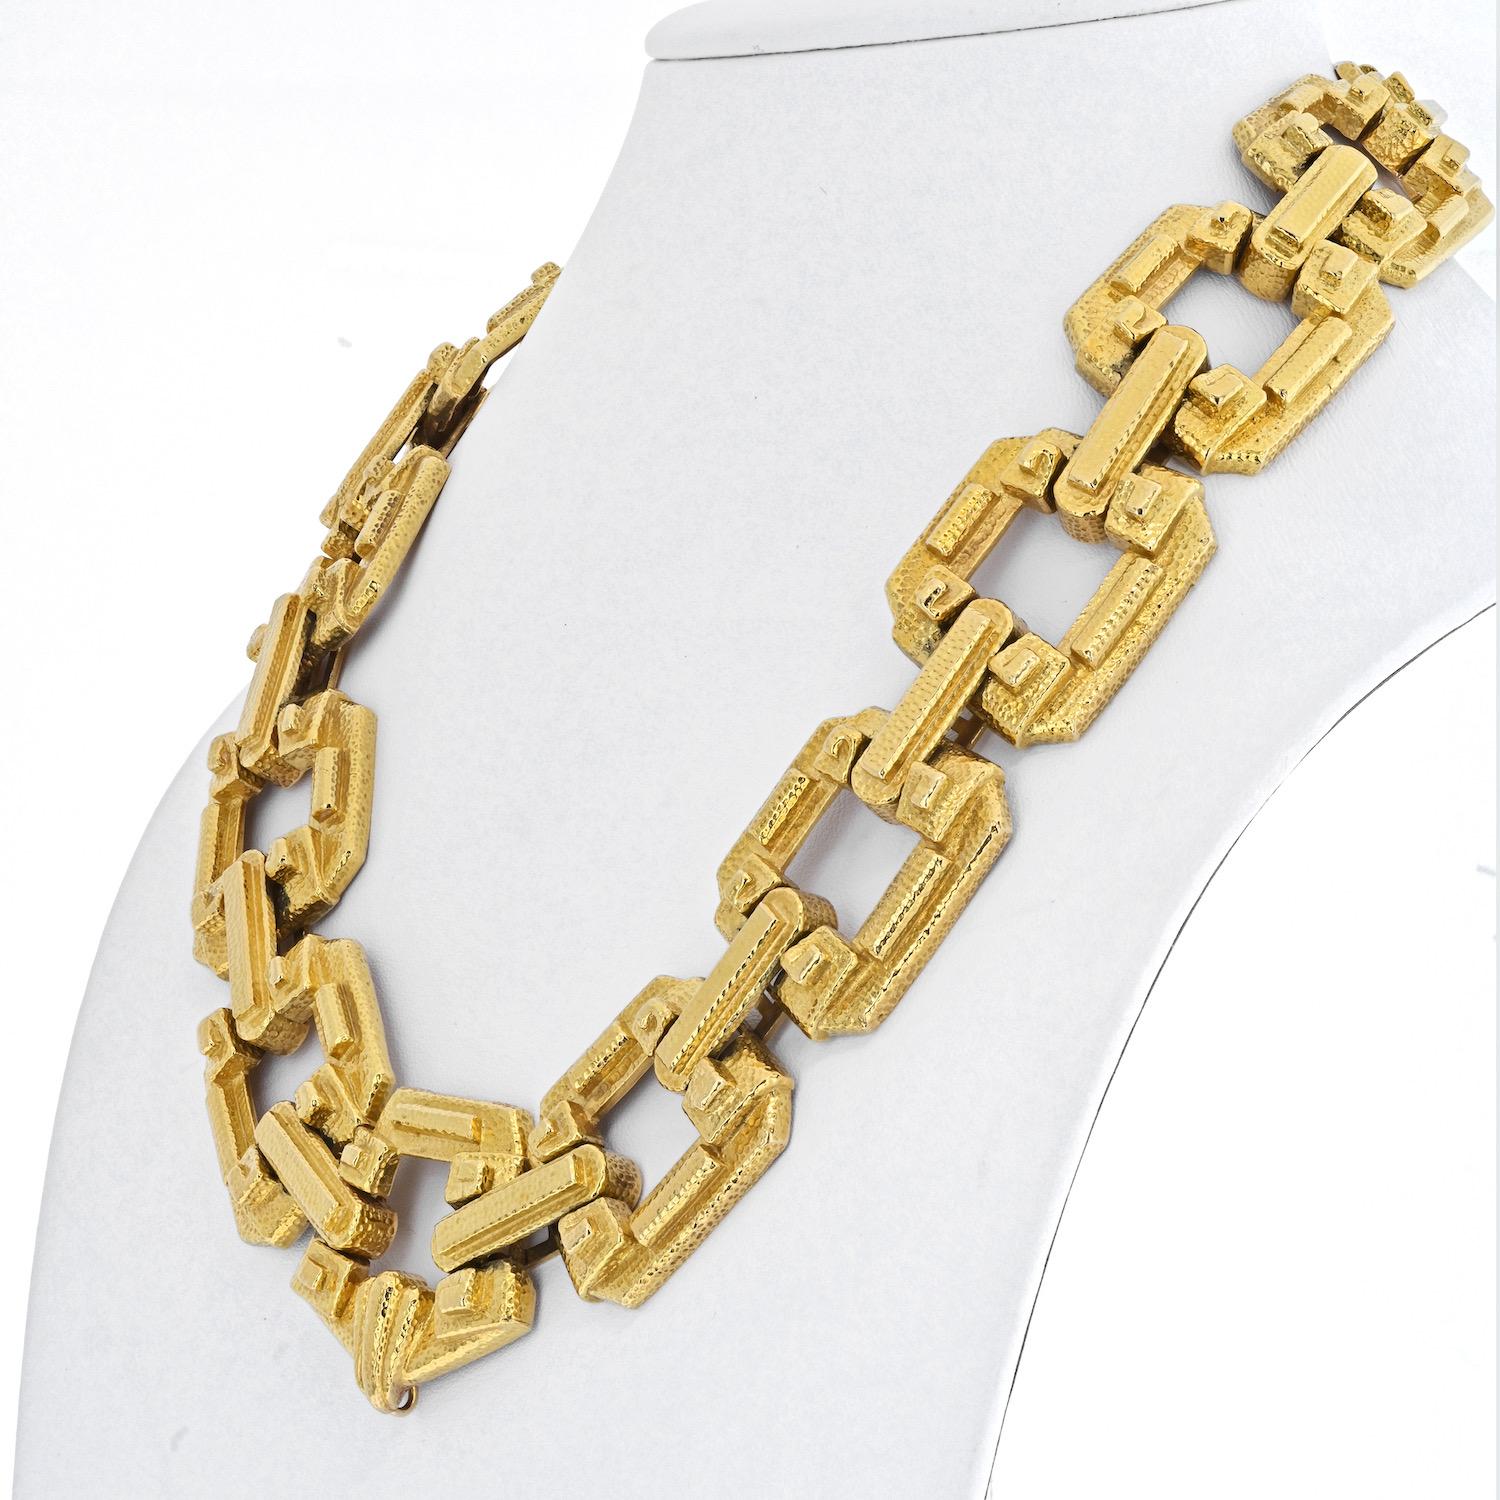 David Webb Gehämmerte Gold-Glieder-Halskette
18 kt., bestehend aus abgestuften, modifizierten, quadratischen Gliedern, geviertelt durch erhabene, geometrisch verschlungene Abschnitte und erhabene Stege, verbunden durch gestufte, längliche, ovale